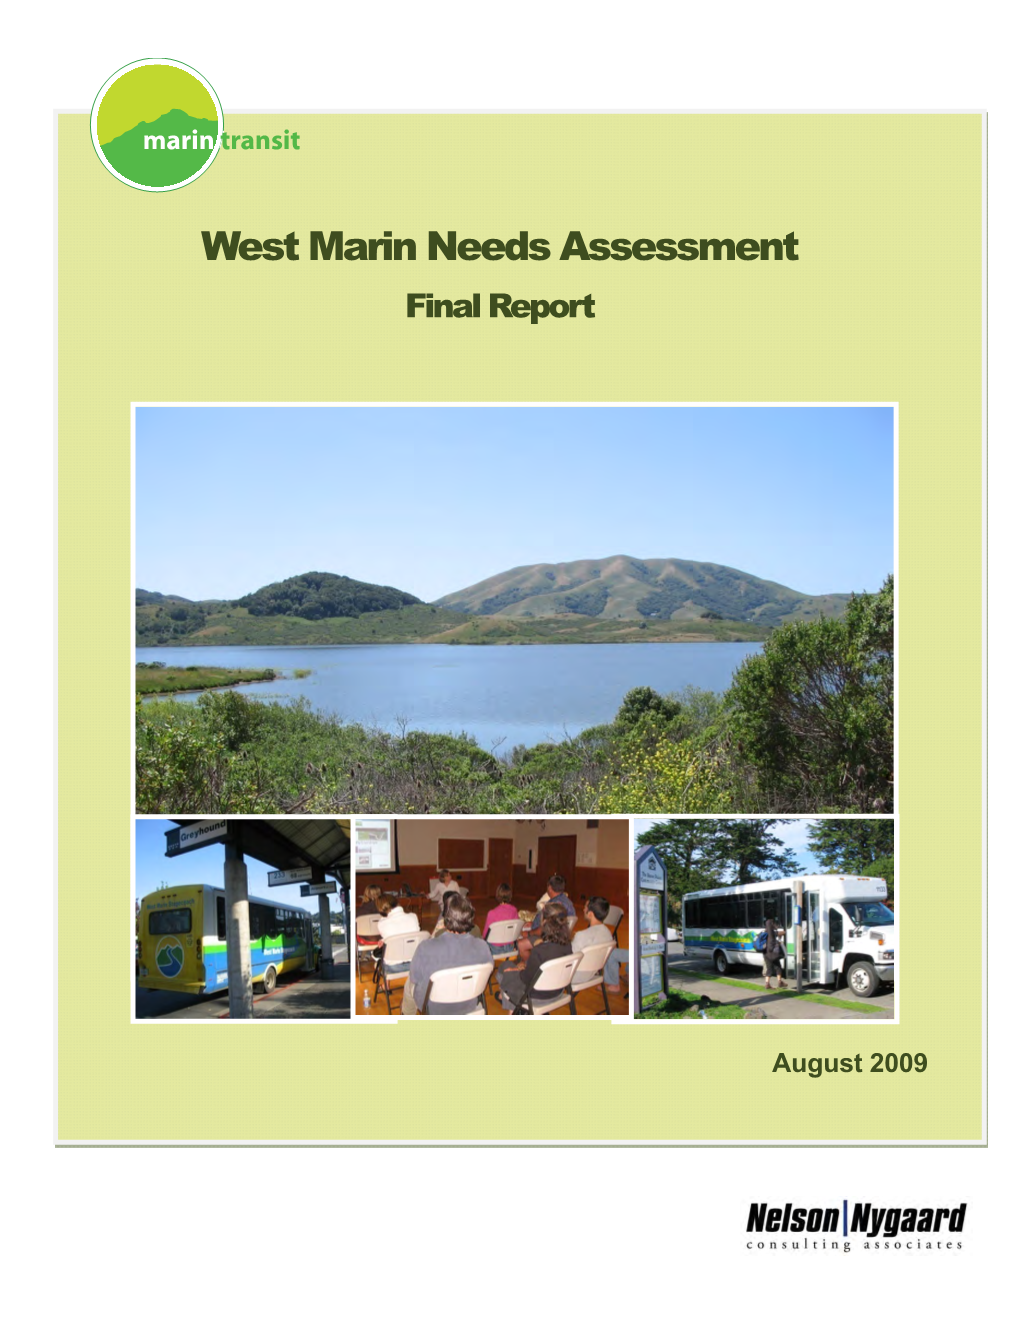 WEST MARIN Needs Assessment FINAL REPORT.Pdf